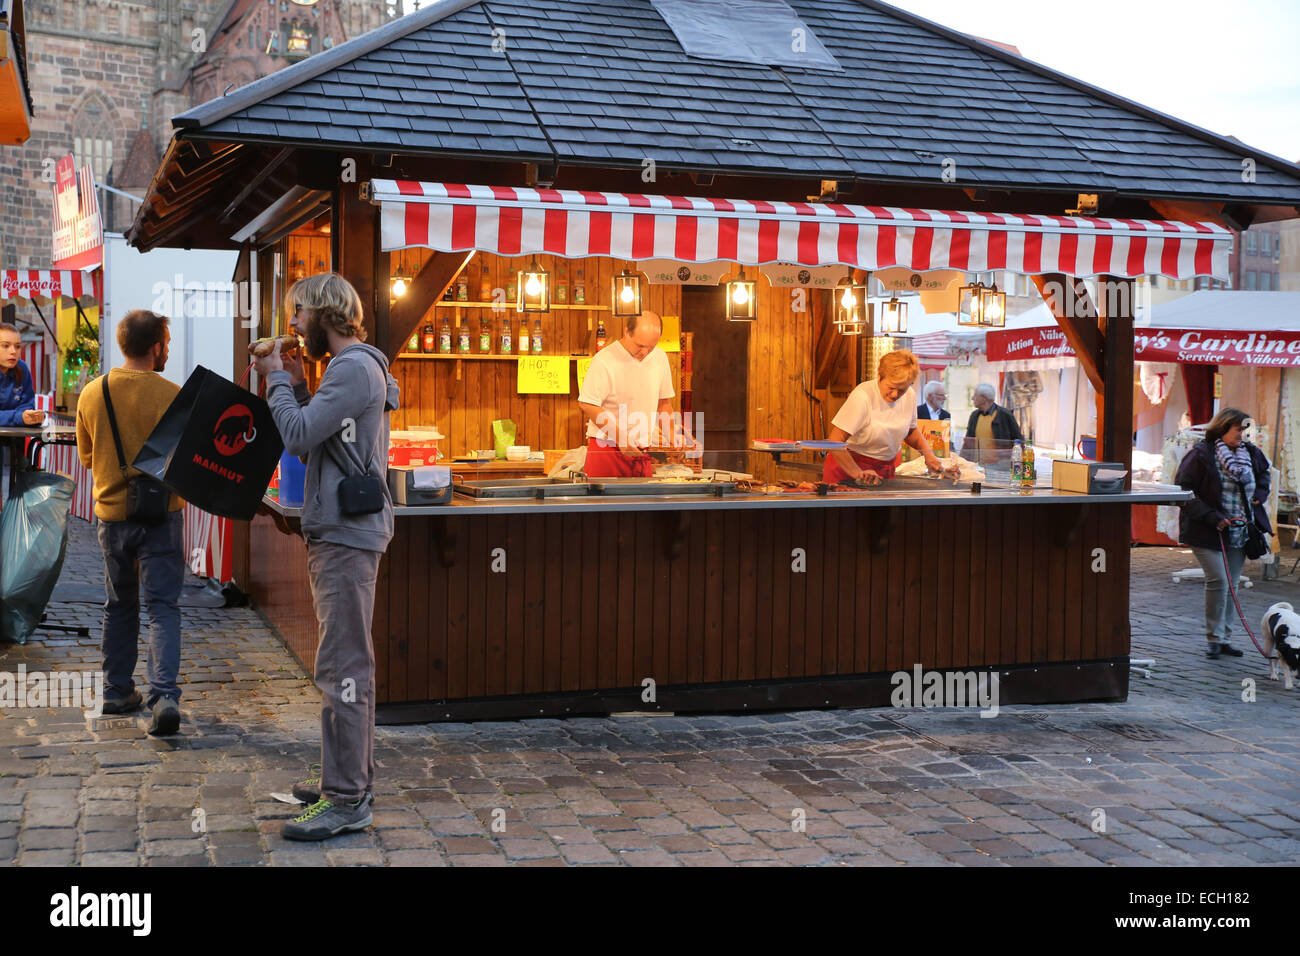 De vendeurs d'aliments sur la place du marché de Nuremberg Banque D'Images